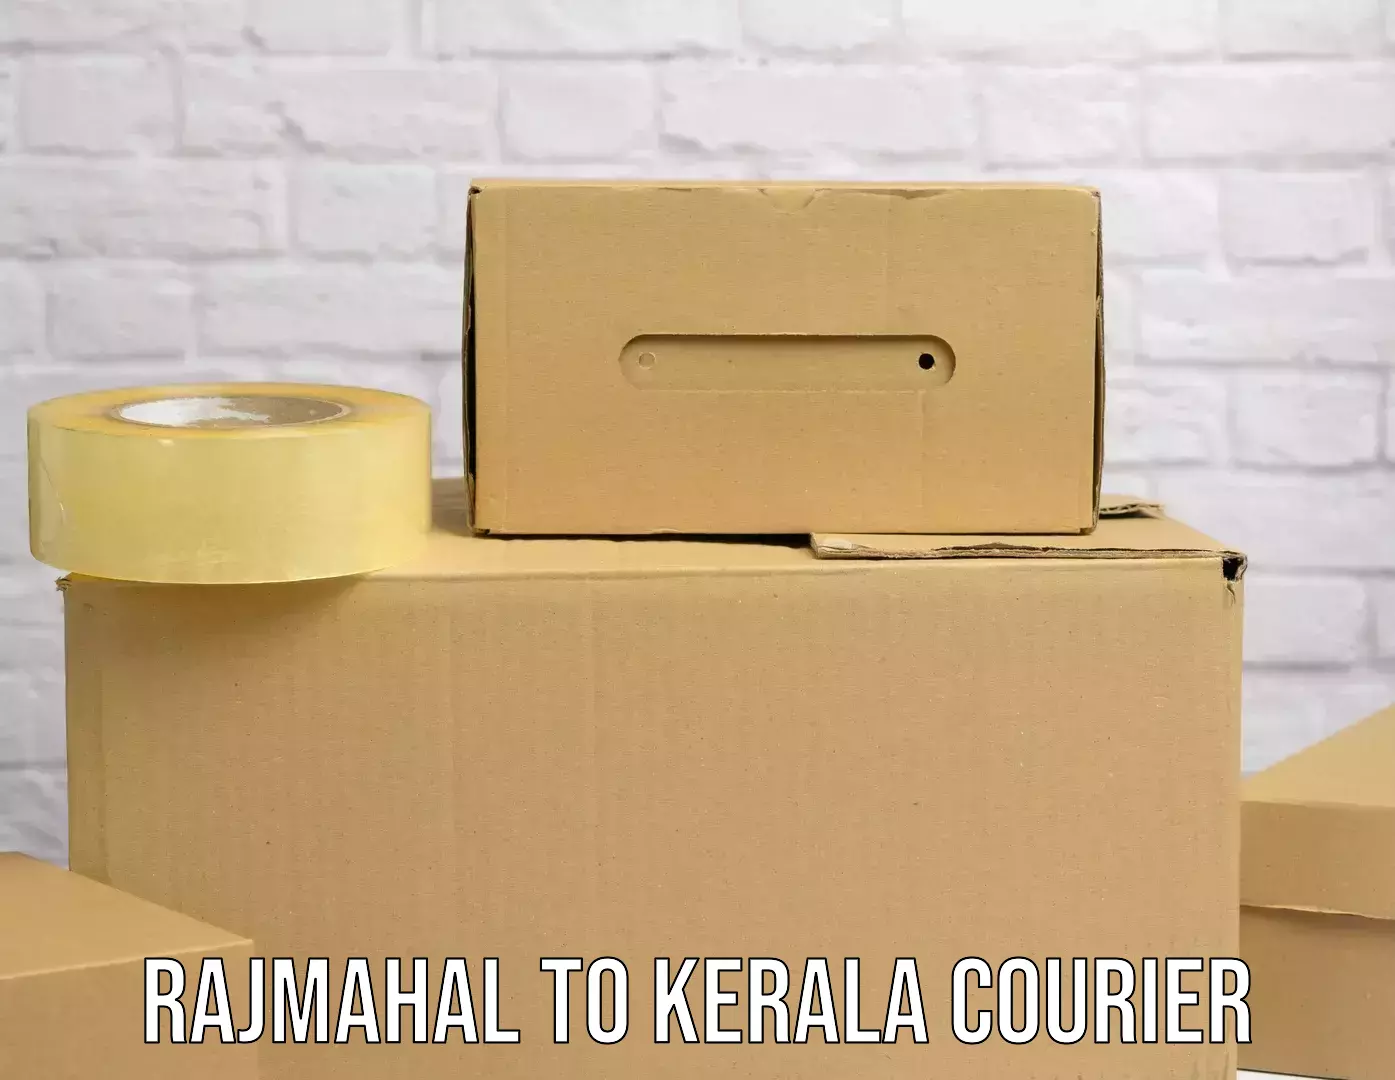 Ocean freight courier Rajmahal to Kerala